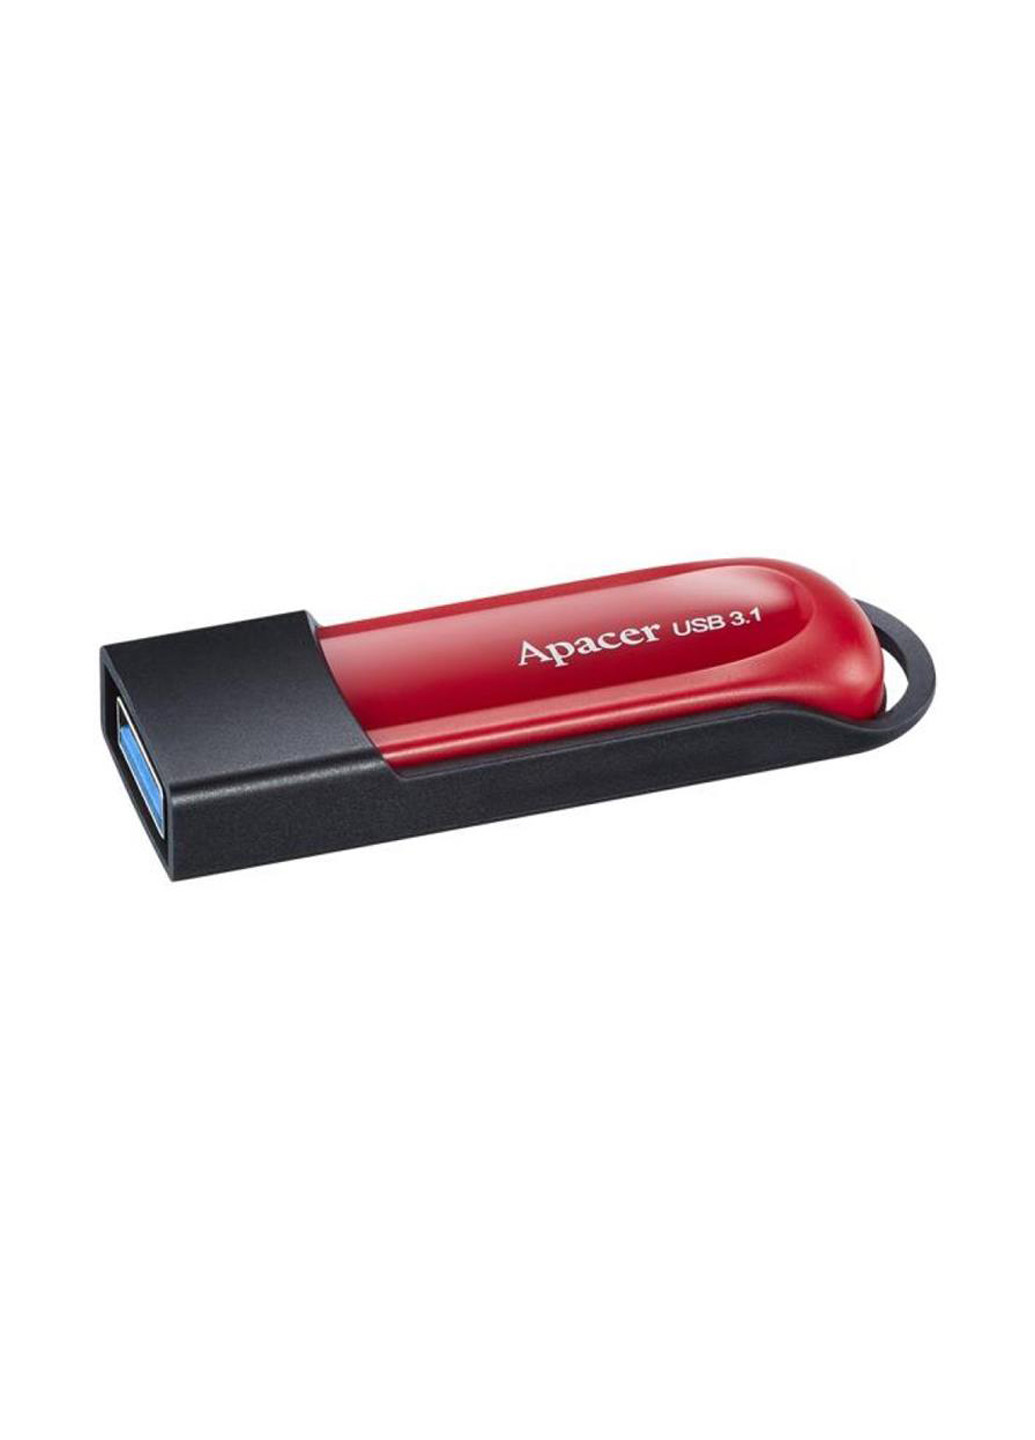 Флеш пам'ять USB AH25A 32GB USB 3.1 Red / Black (AP32GAH25AB-1) Apacer флеш память usb apacer ah25a 32gb usb 3.1 red/black (ap32gah25ab-1) (135165442)